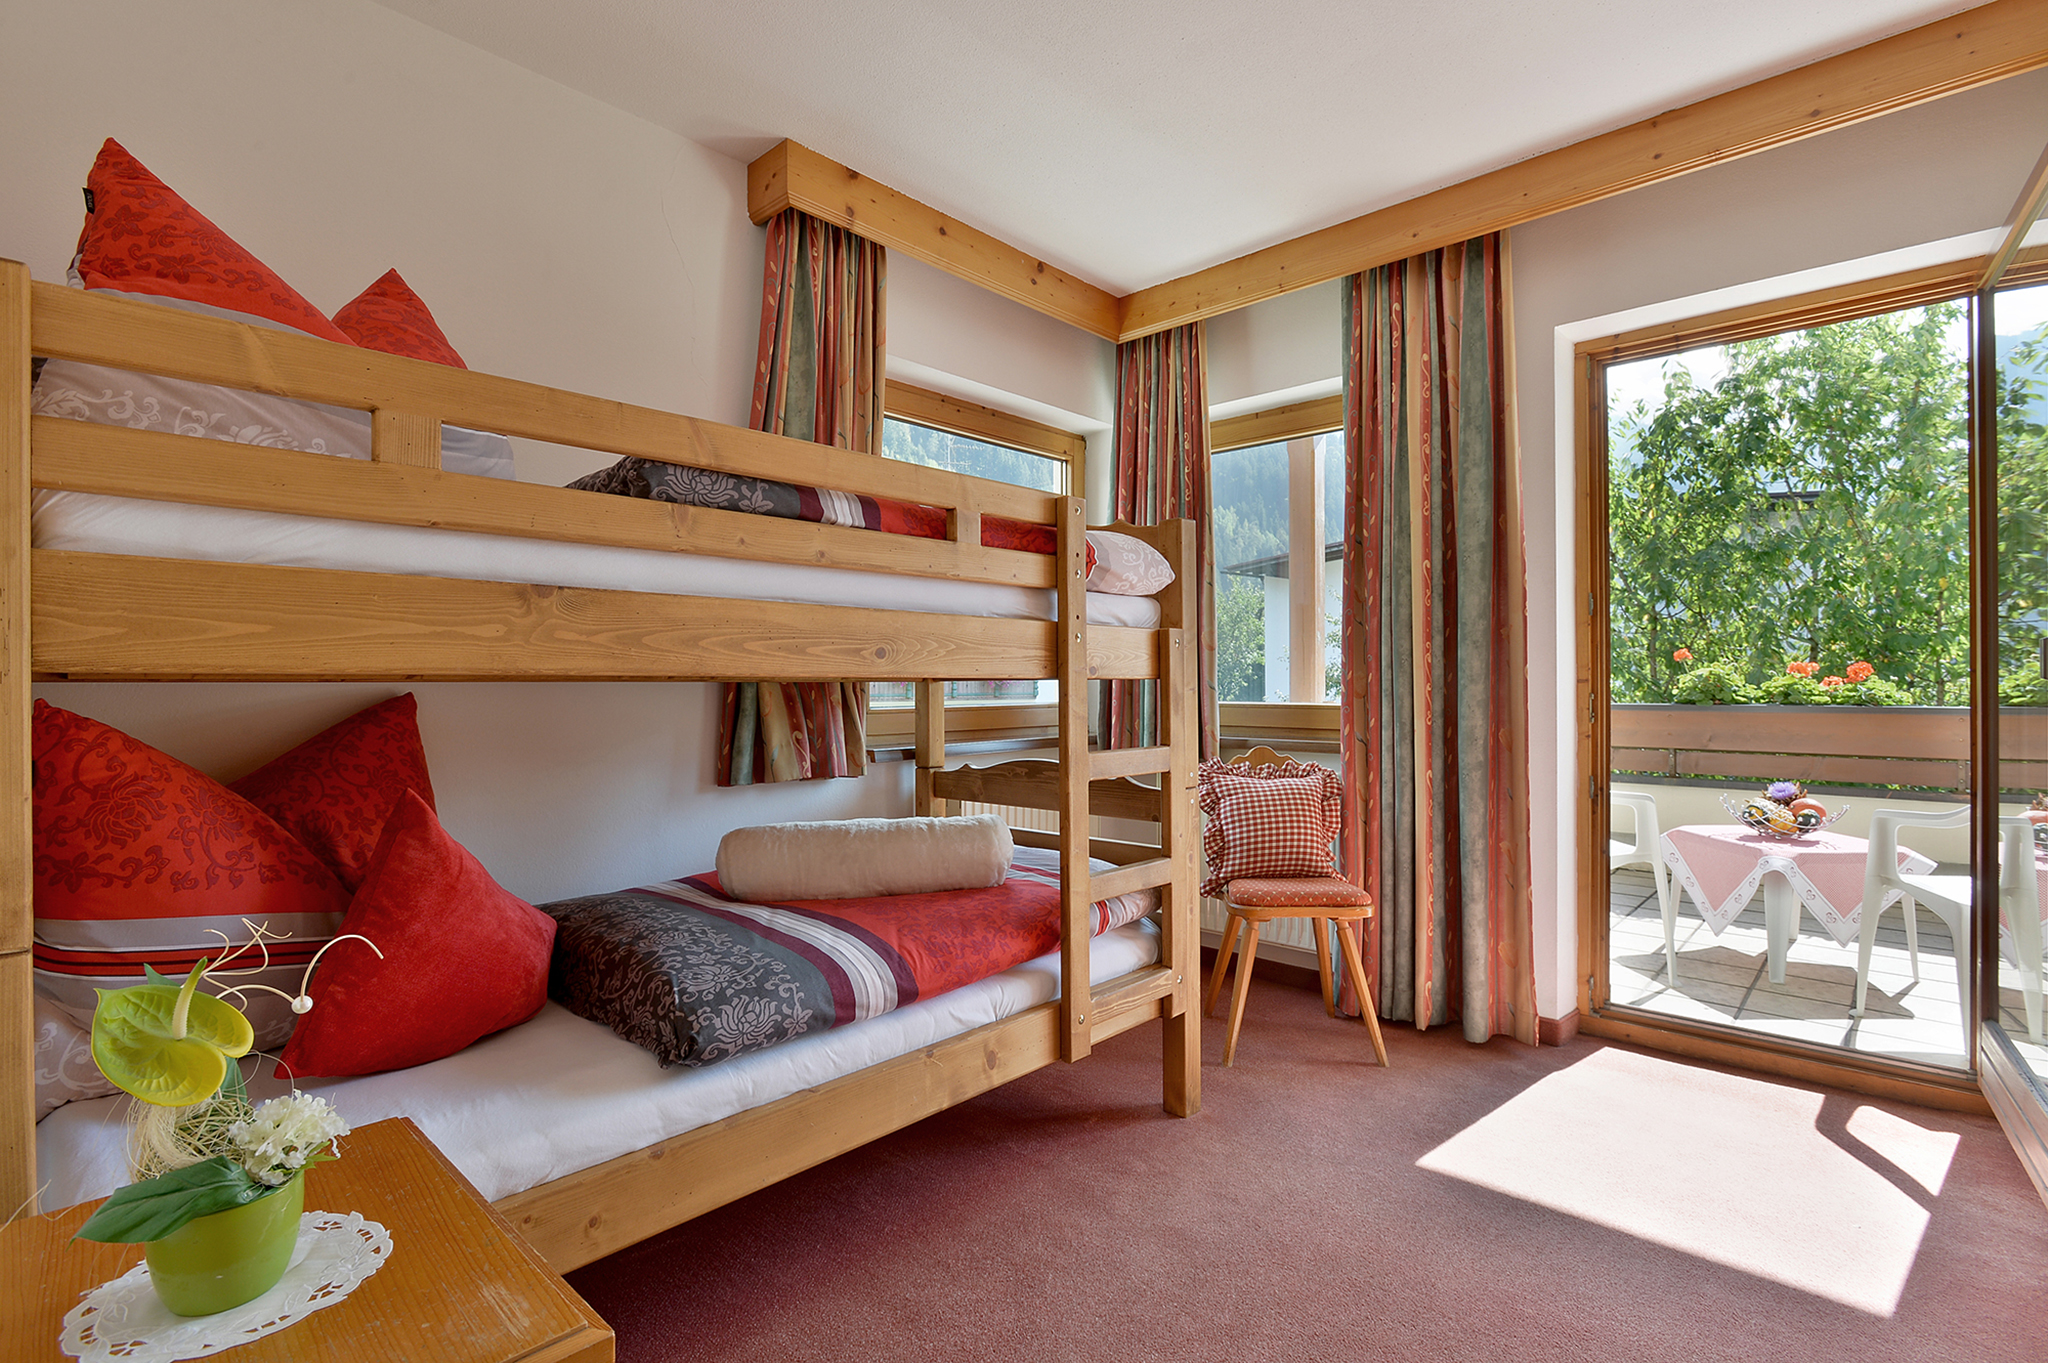 Appartementhaus Kaltenbach-Stumm: Schlafzimmer mit Etagenbett (Beispiel)